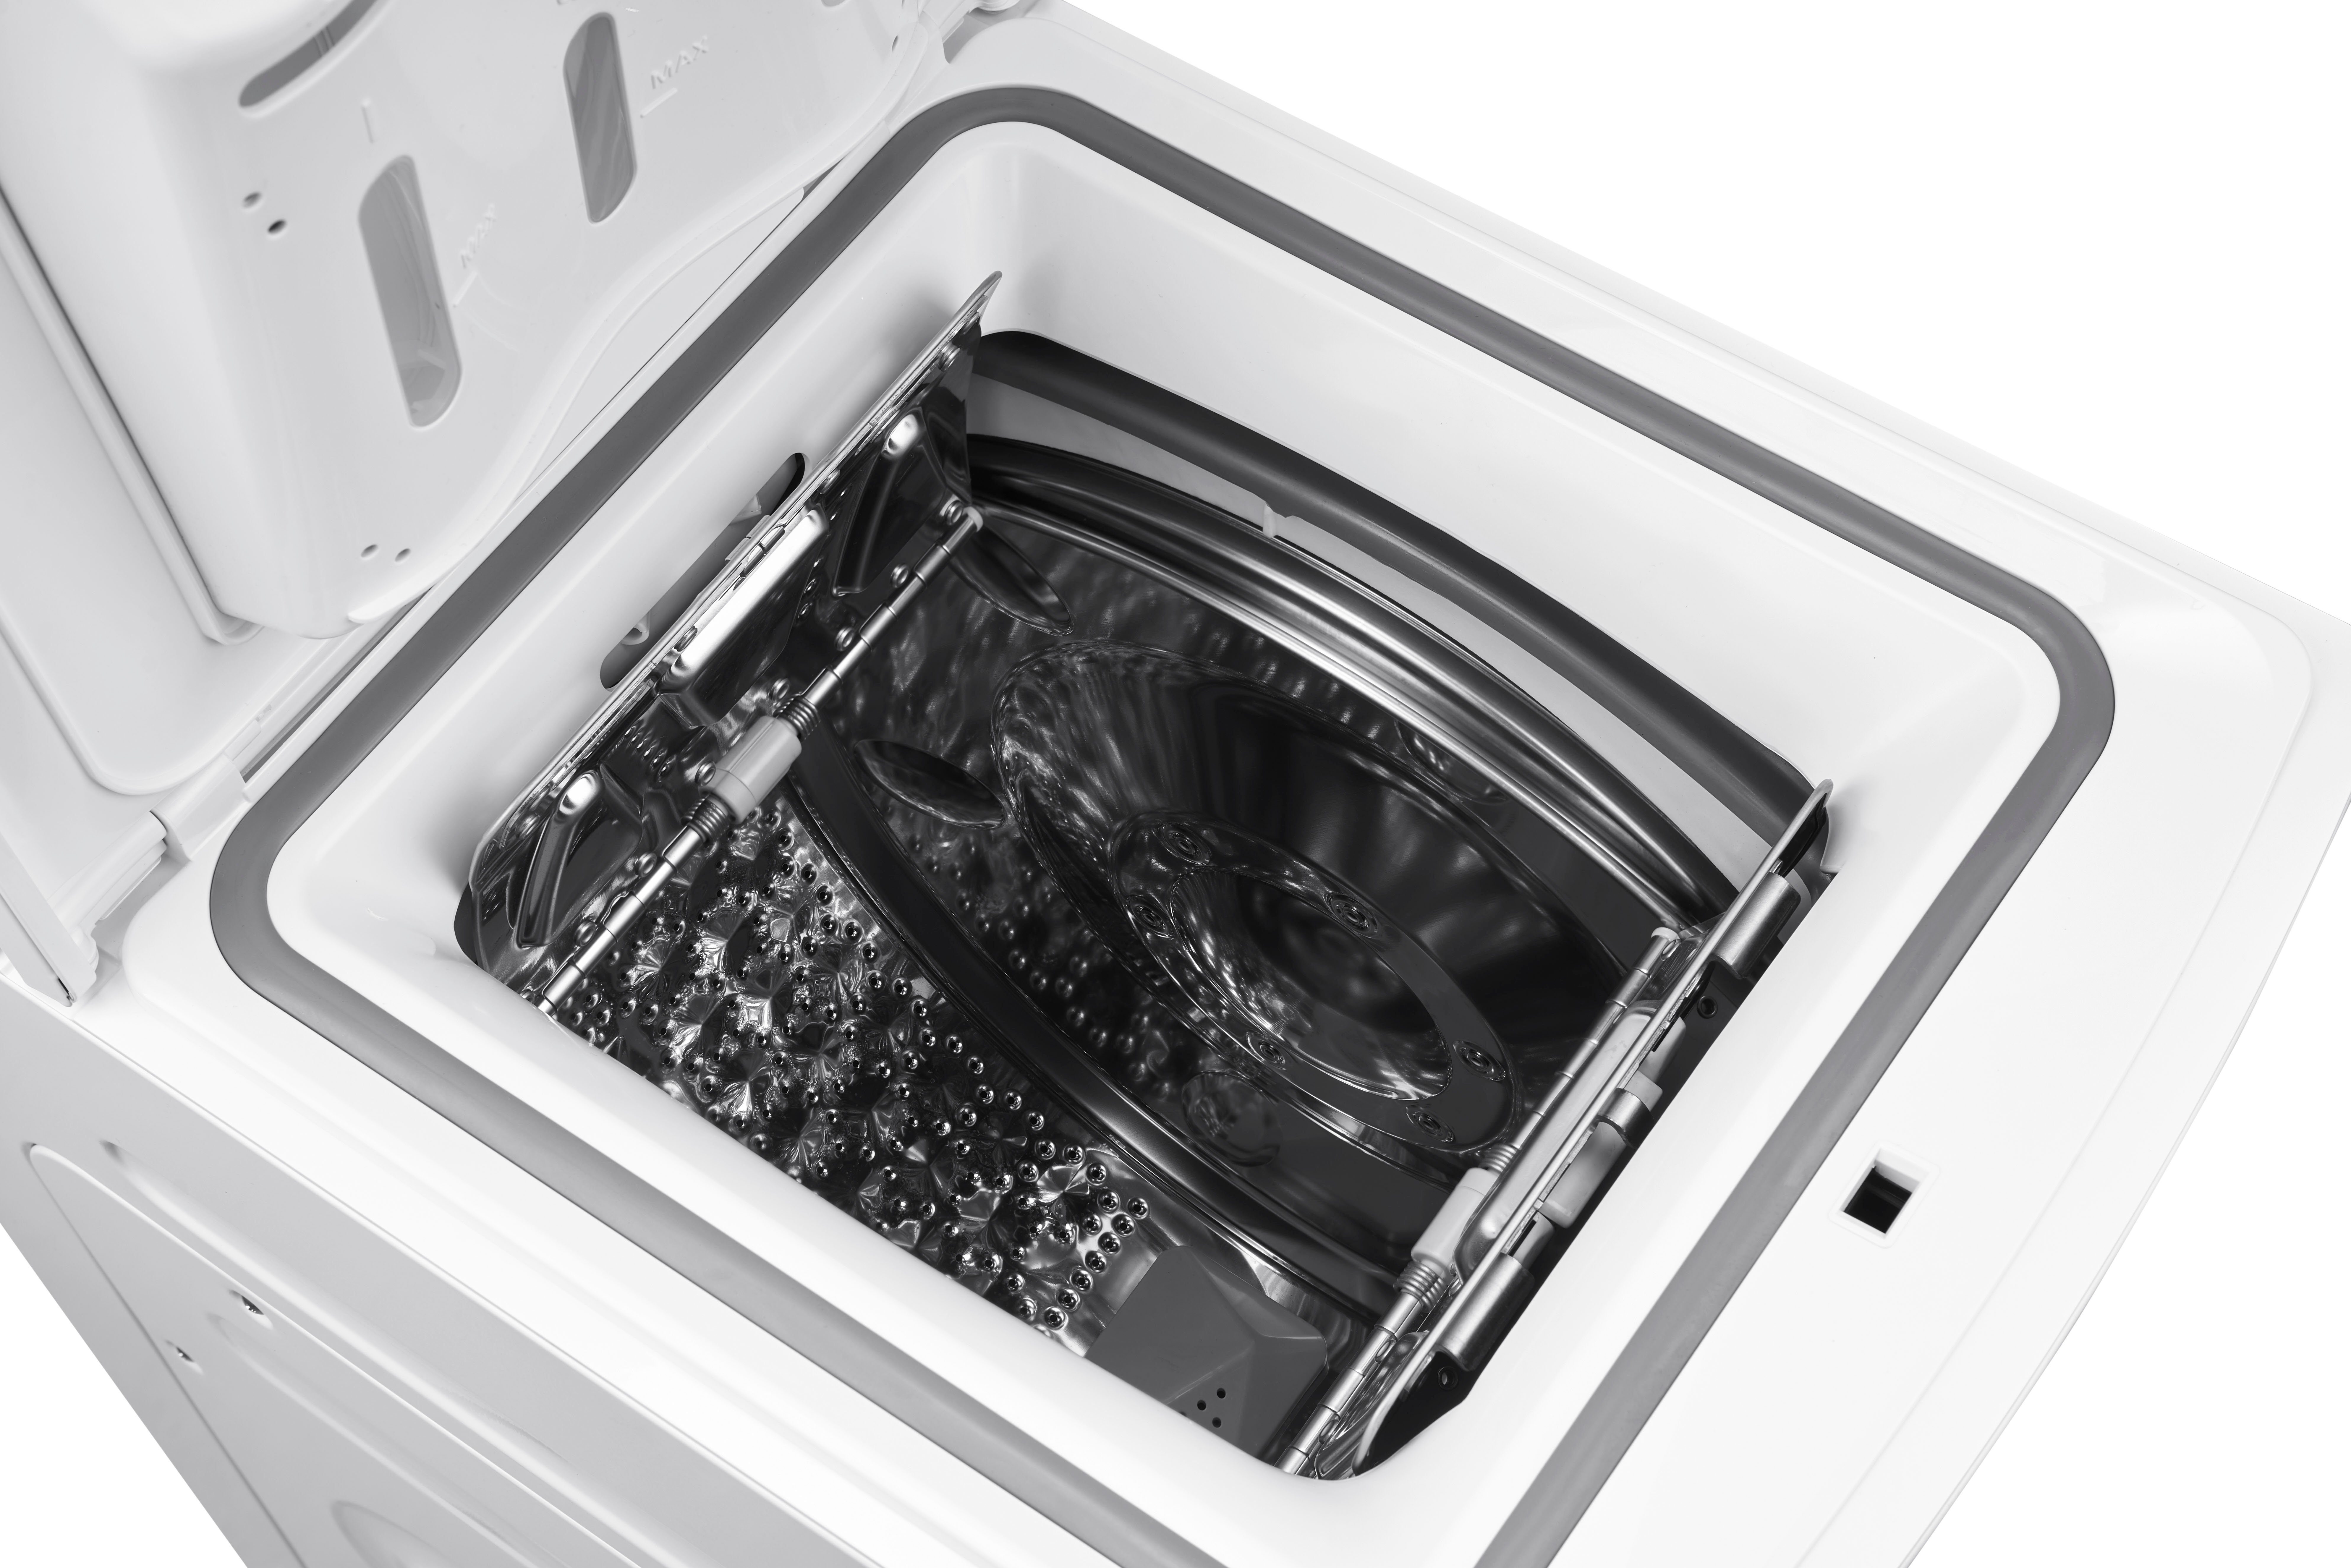 Hanseatic Waschmaschine Toplader HTW7512C, 7,5 Programm Express 1200 Überlaufschutzsystem, Mengenautomatik, kg, U/min